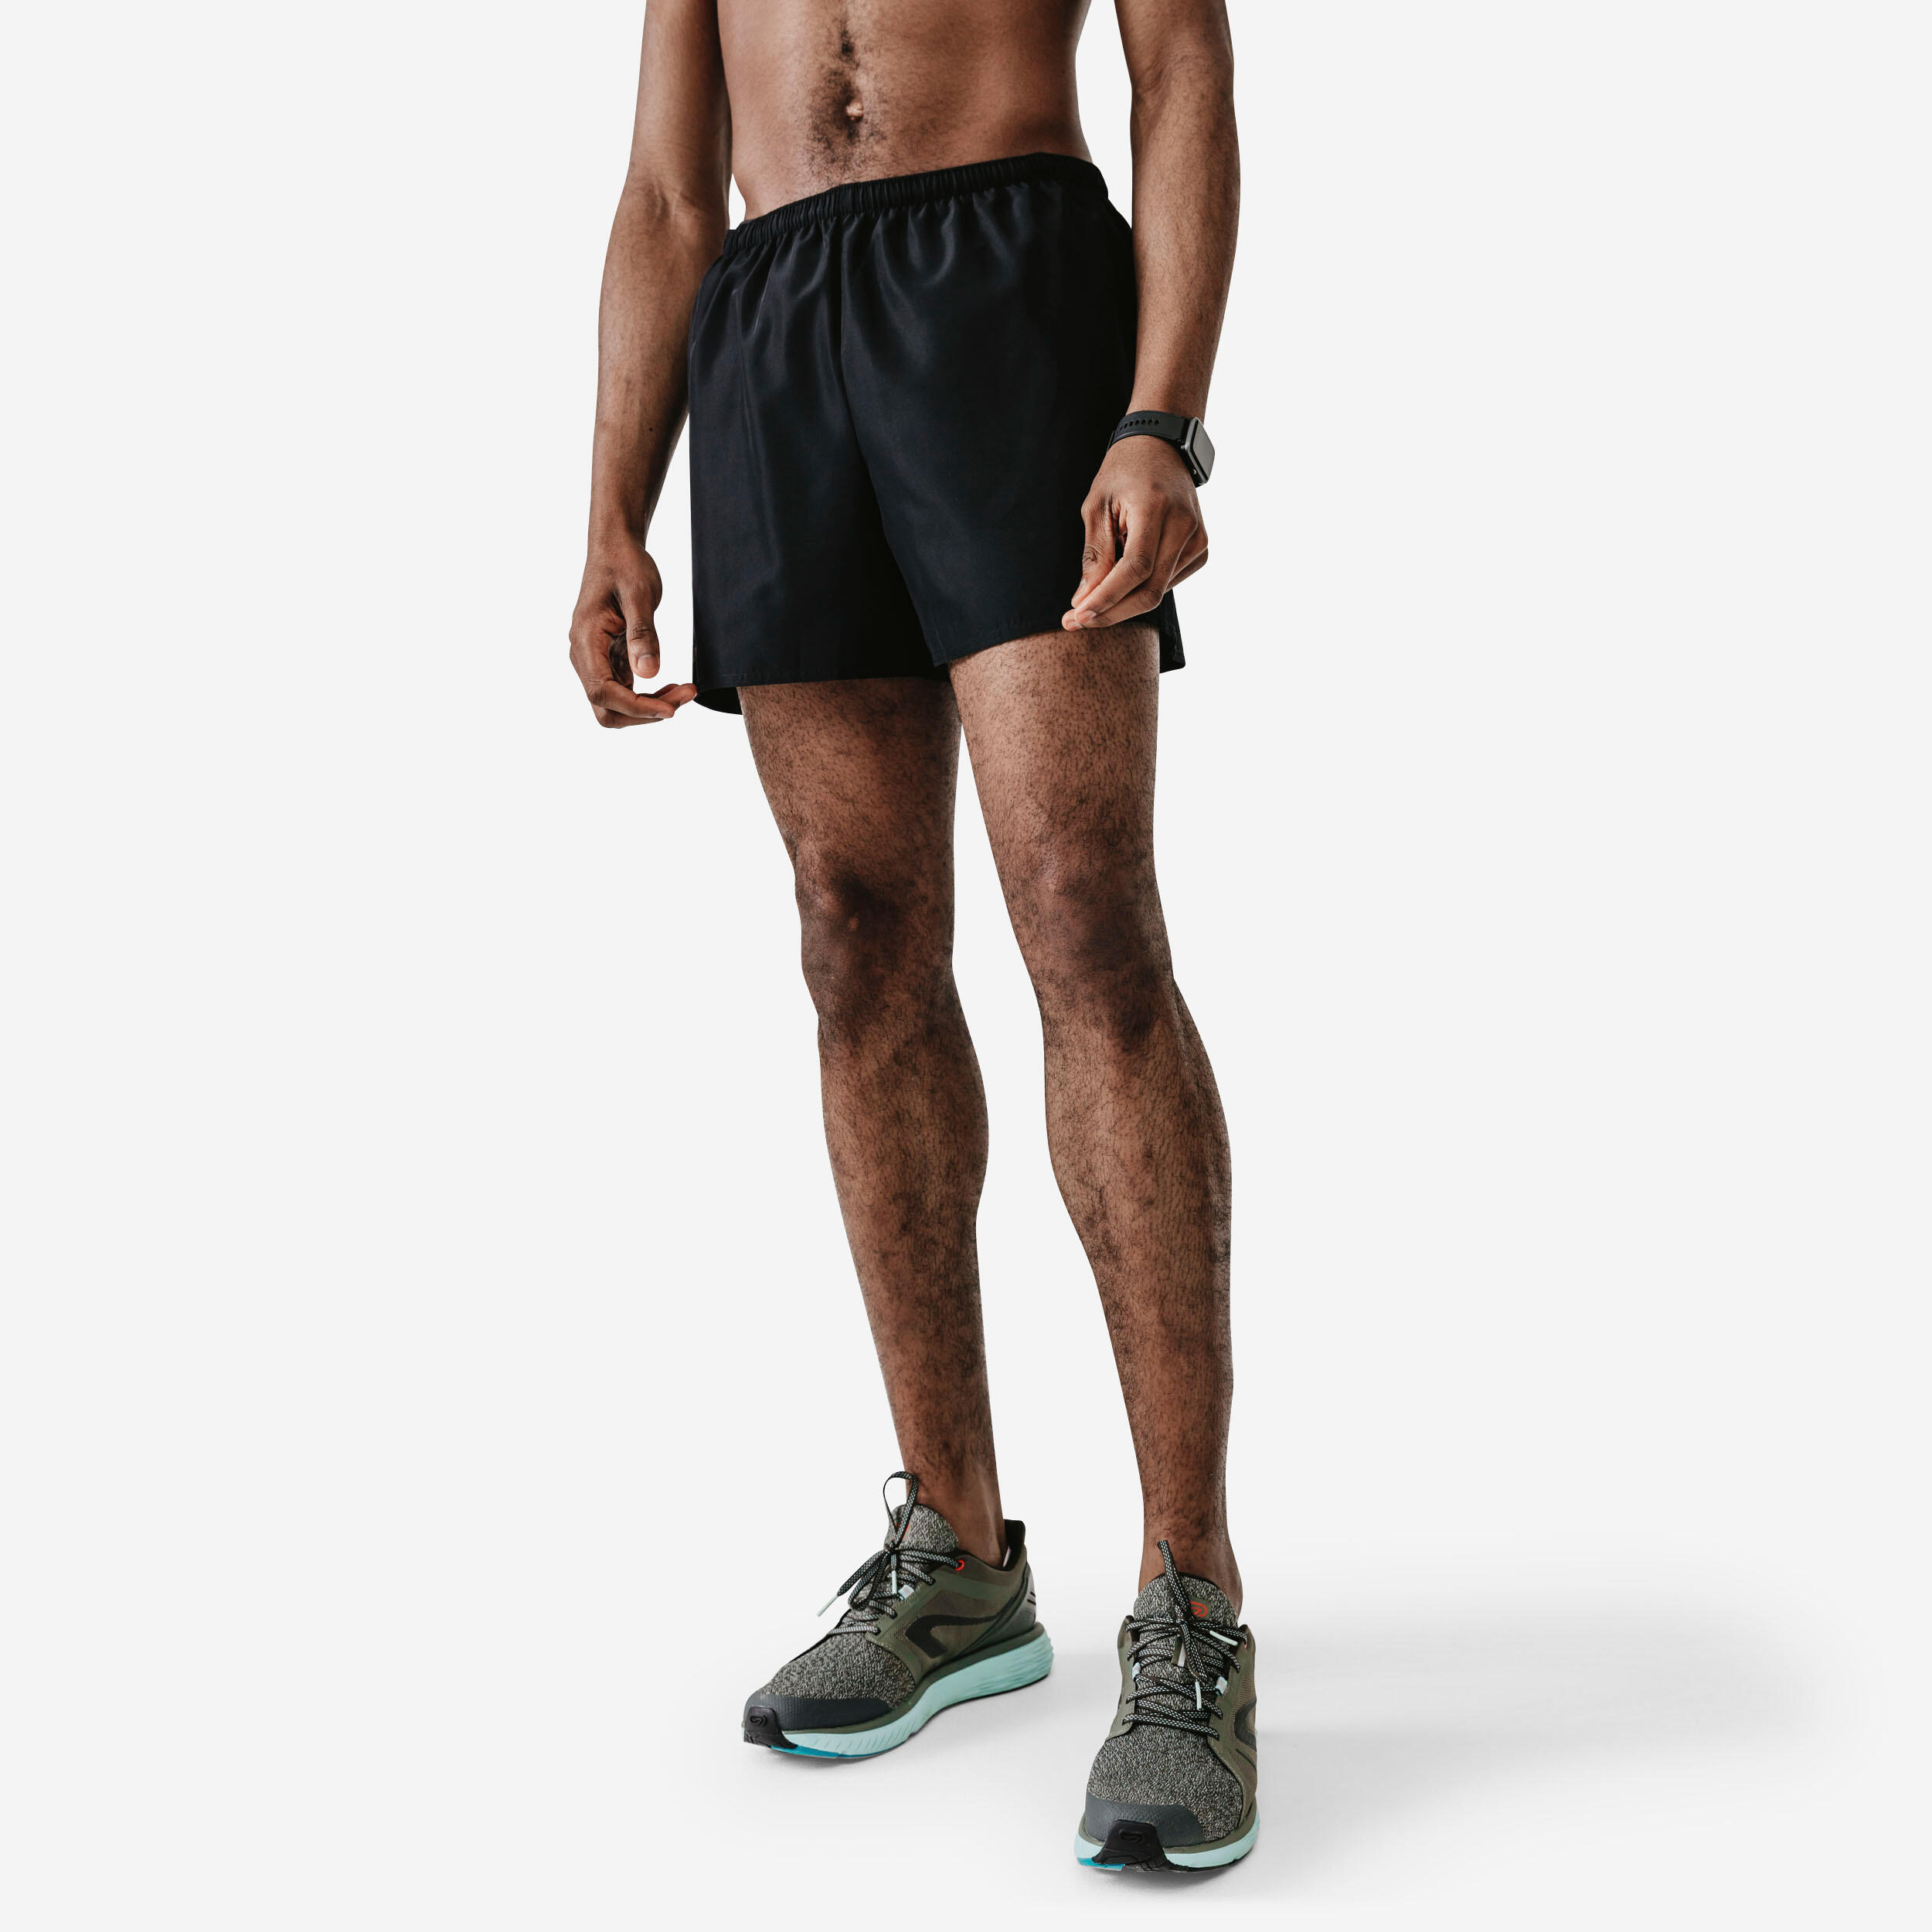 Decathlon | Pantaloncini running uomo DRY neri |  Kalenji